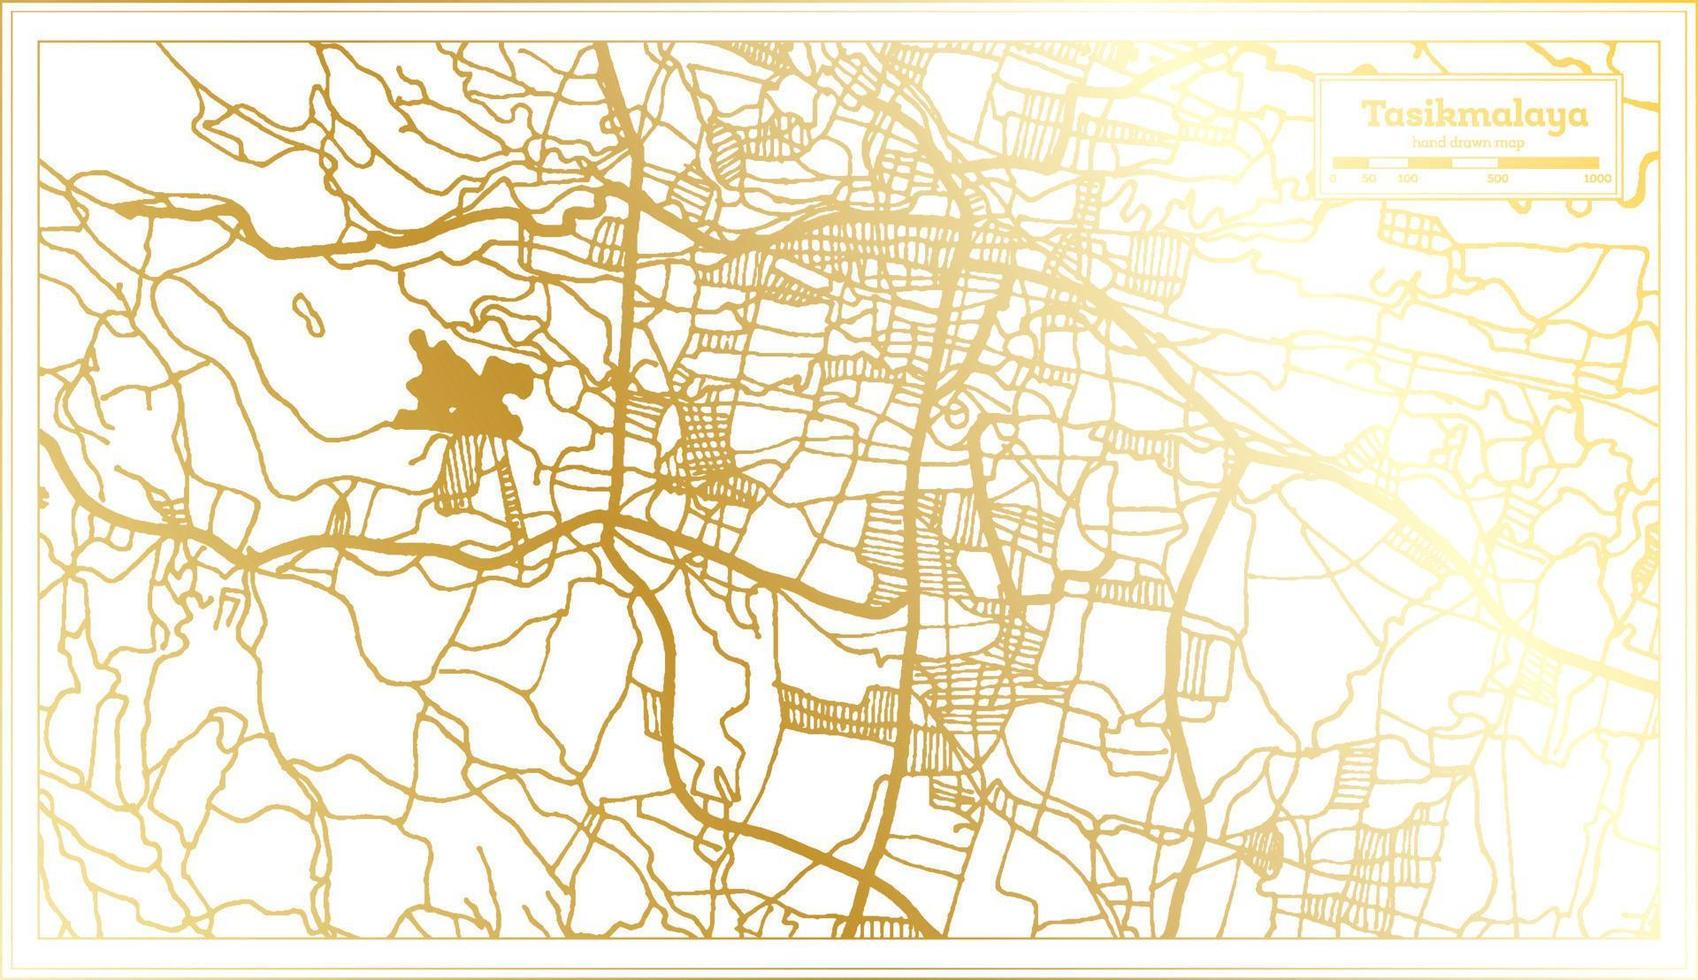 Tasikmalaya Indonesien Stadtplan im Retro-Stil in goldener Farbe. Übersichtskarte. vektor